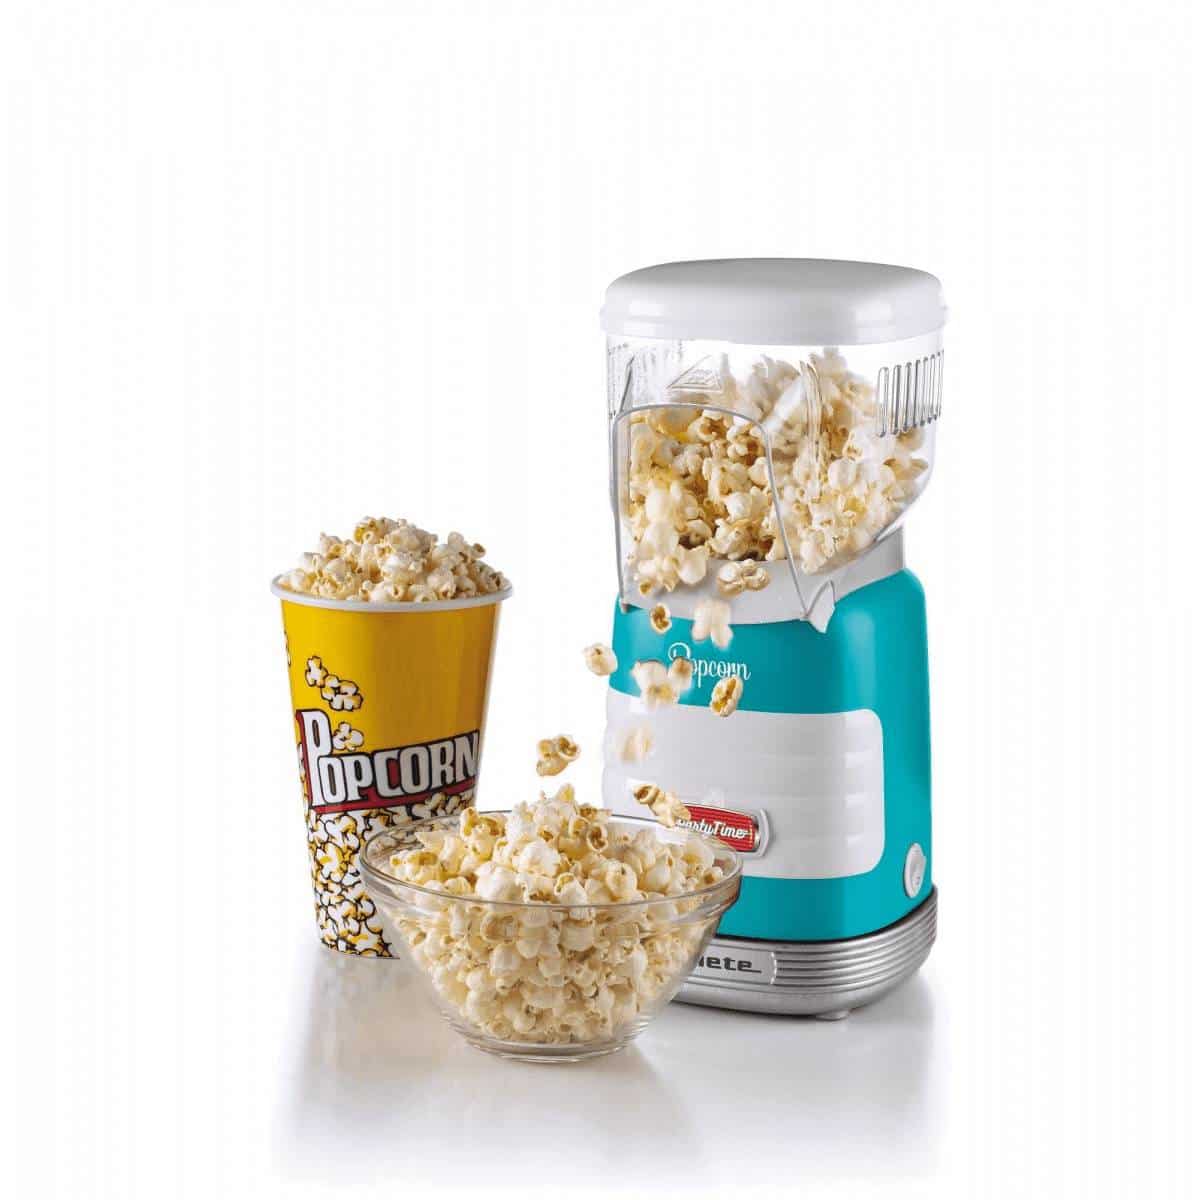 POPCORN MAKER RETRO - Macchina elettrica per popcorn - Create